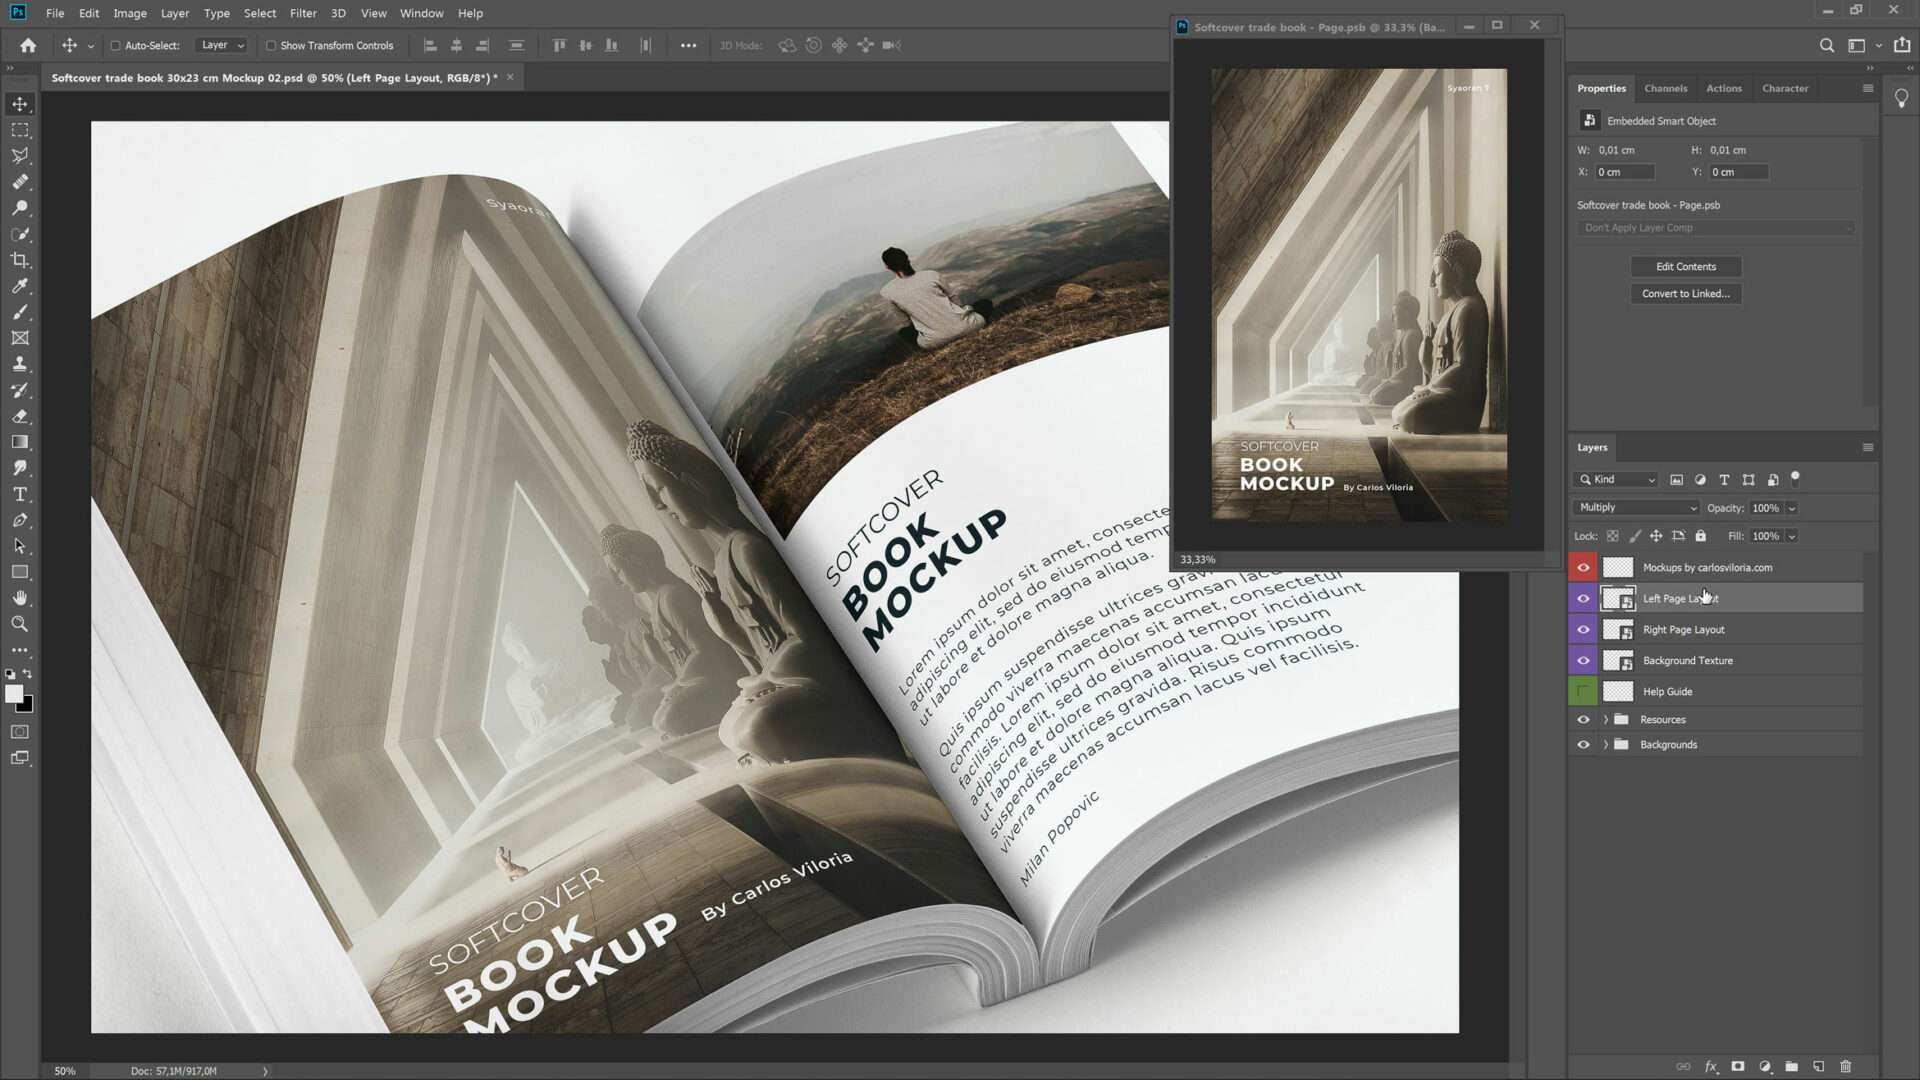 Softcover Trade Book Mockup Open by carlosviloria.com